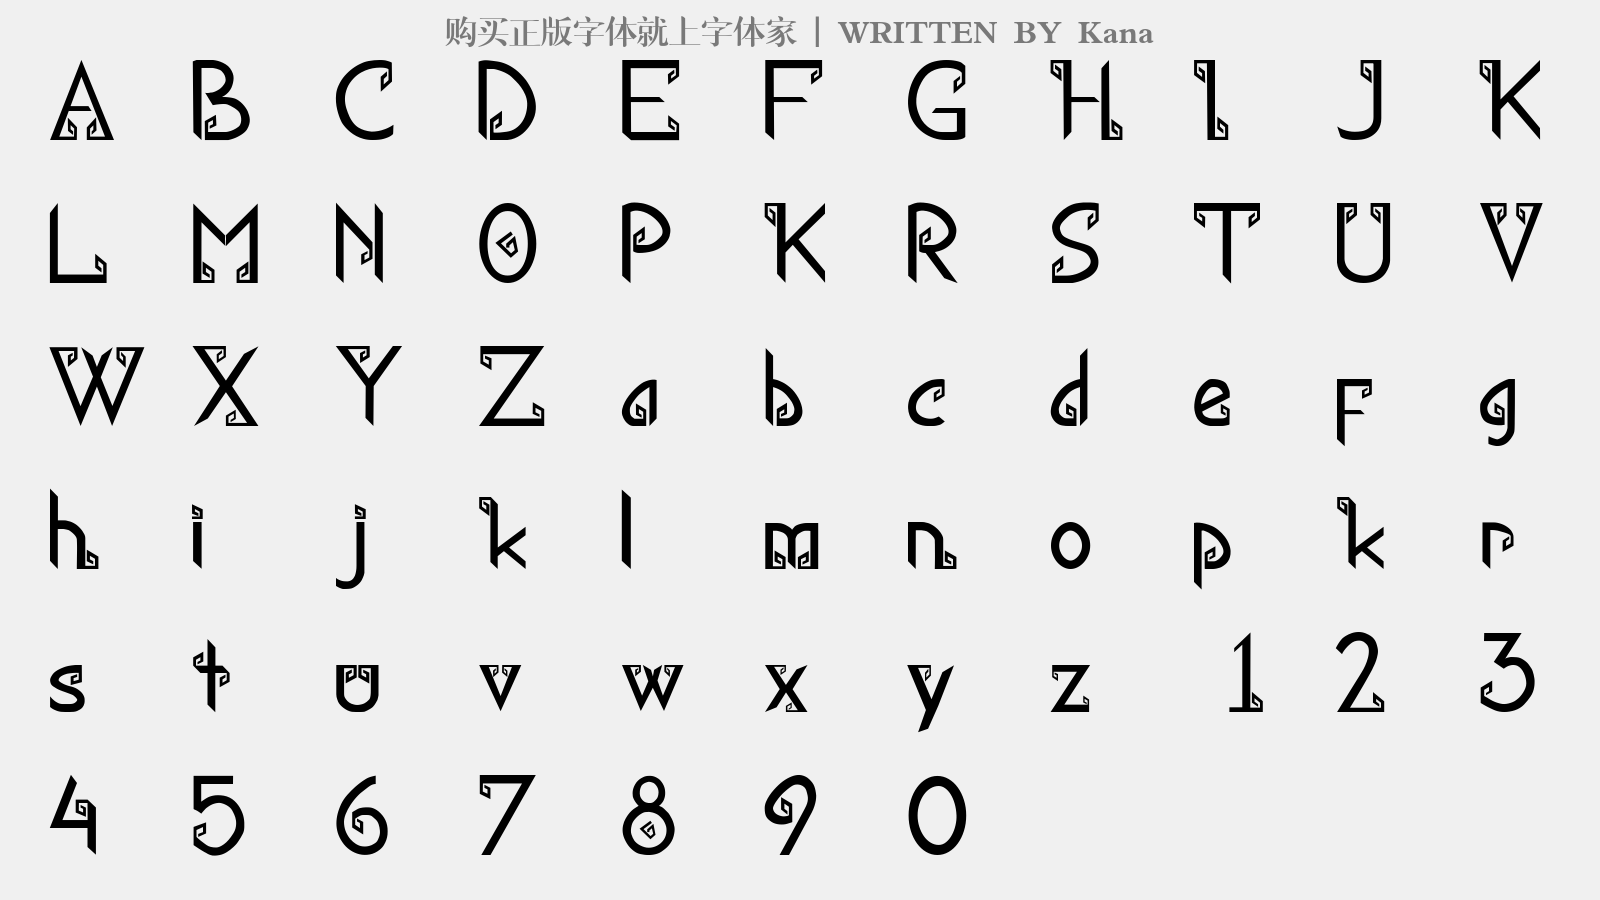 Kana - 大写字母/小写字母/数字